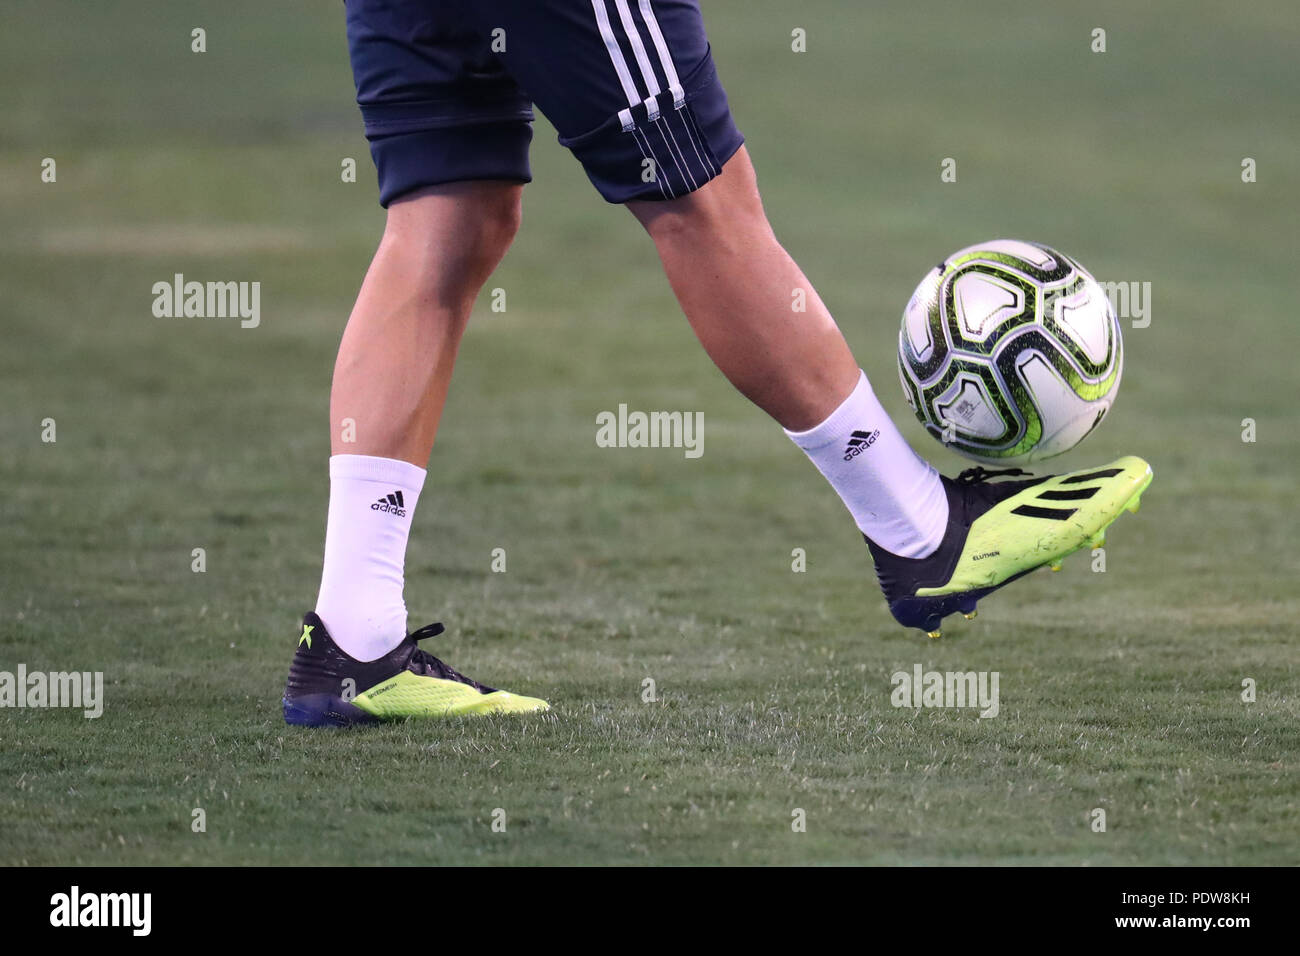 EAST Rutherford, Nueva Jersey - Agosto 7, 2018: jugador profesional de fútbol lleva tacos Adidas durante el Real Madrid vs Roma juego en la Copa ICC 2018 Fotografía de stock - Alamy